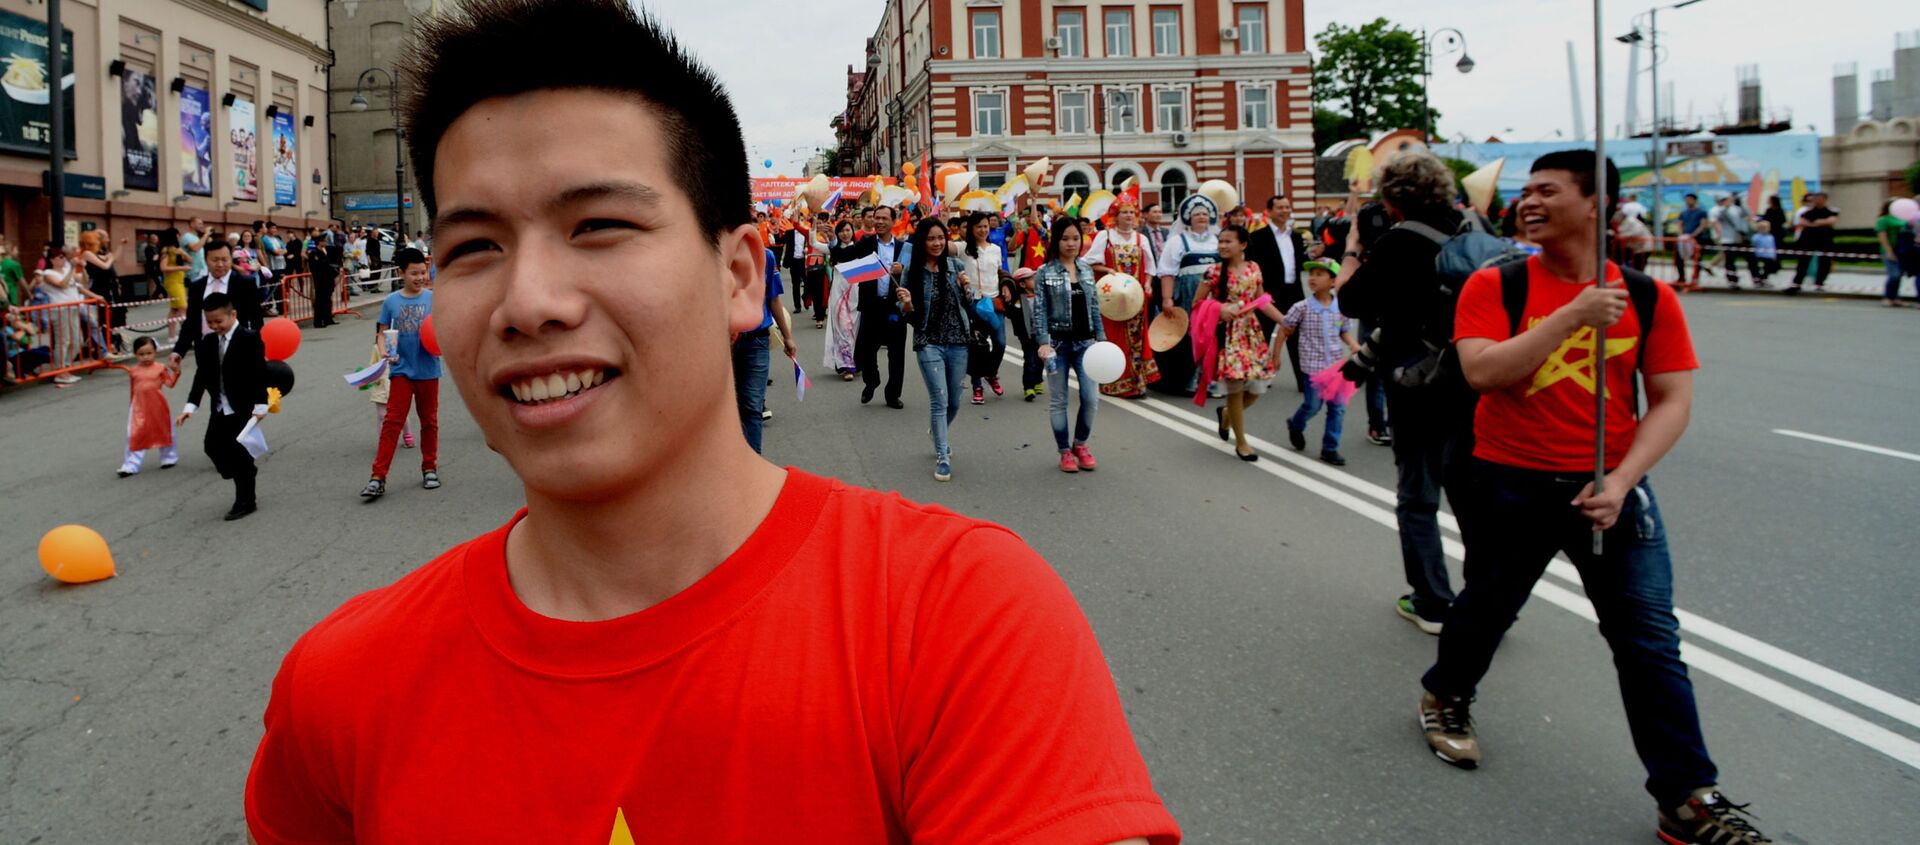 Đại diện cộng đồng người Việt Nam tham gia một cuộc diễu hành nhân Ngày Thành phố ở Vladivostok. - Sputnik Việt Nam, 1920, 20.06.2021